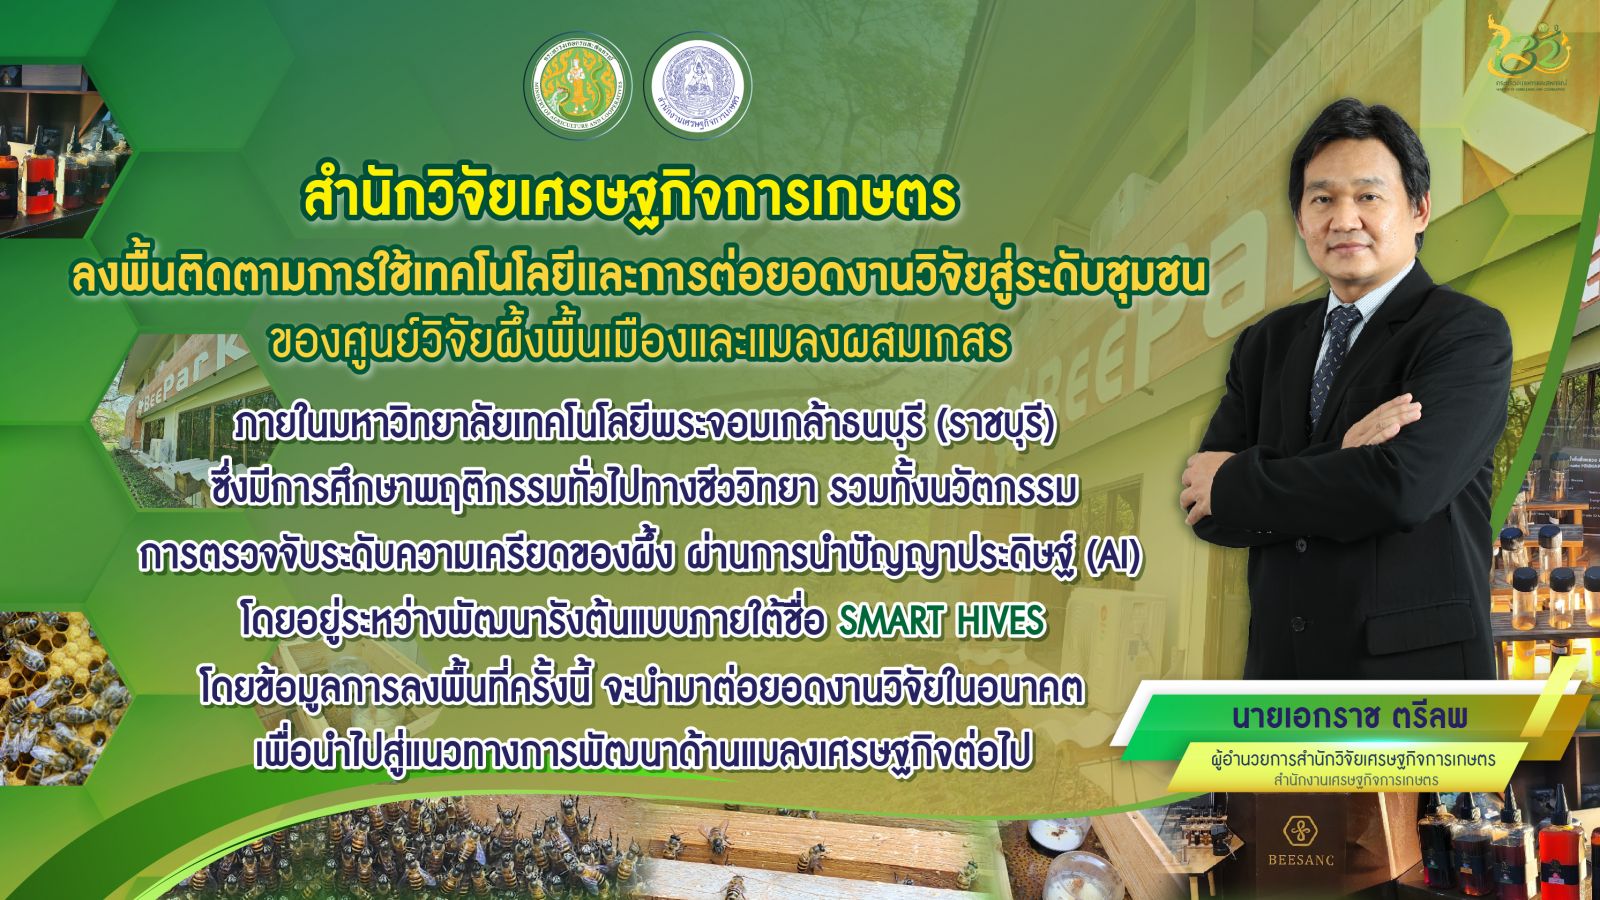 สศก. ร่วมยกระดับงานวิจัย ผึ้งไทย ทางเลือกใหม่สร้างได้เกษตรกร ณ ศูนย์วิจัยผึ้งพื้นเมือง ราชบุรี